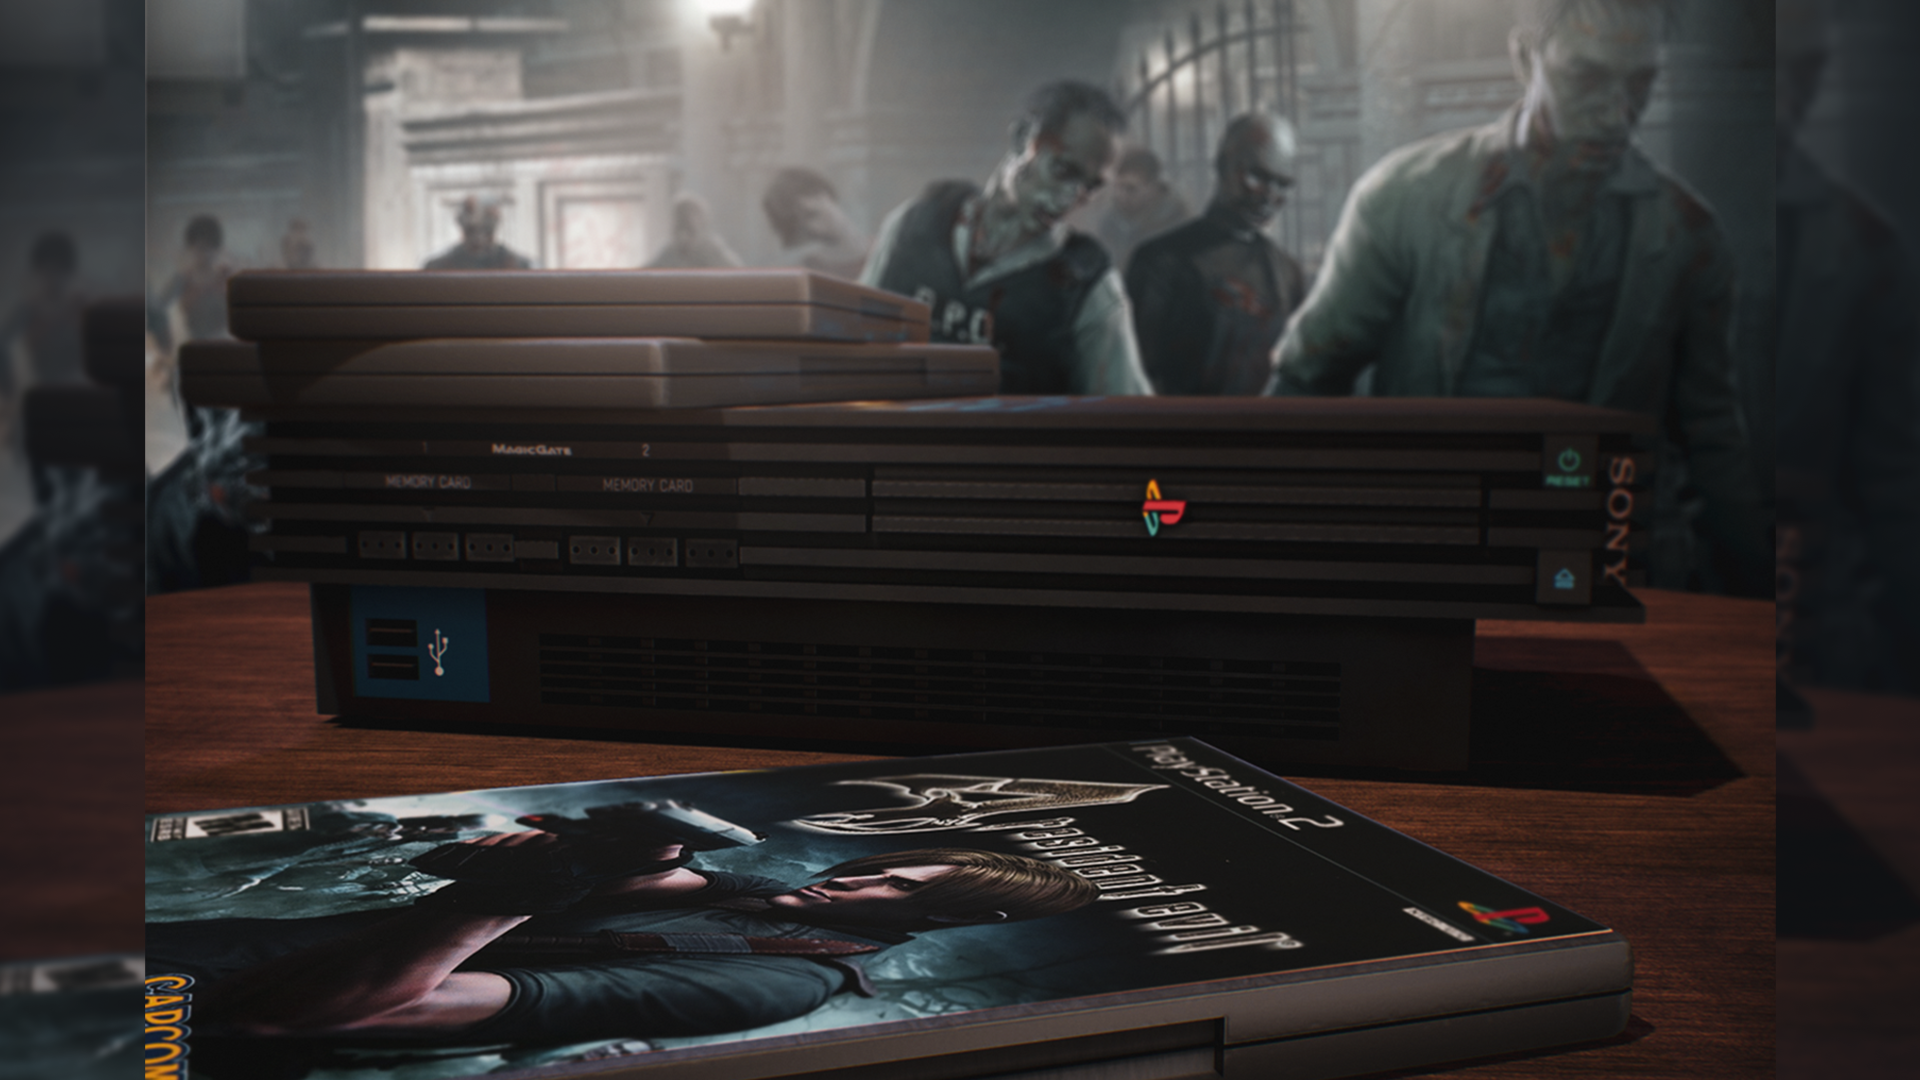 Jogo Never Dead para PS3 e Xbox 360 Tiro em Terceira Pessoa - SONY